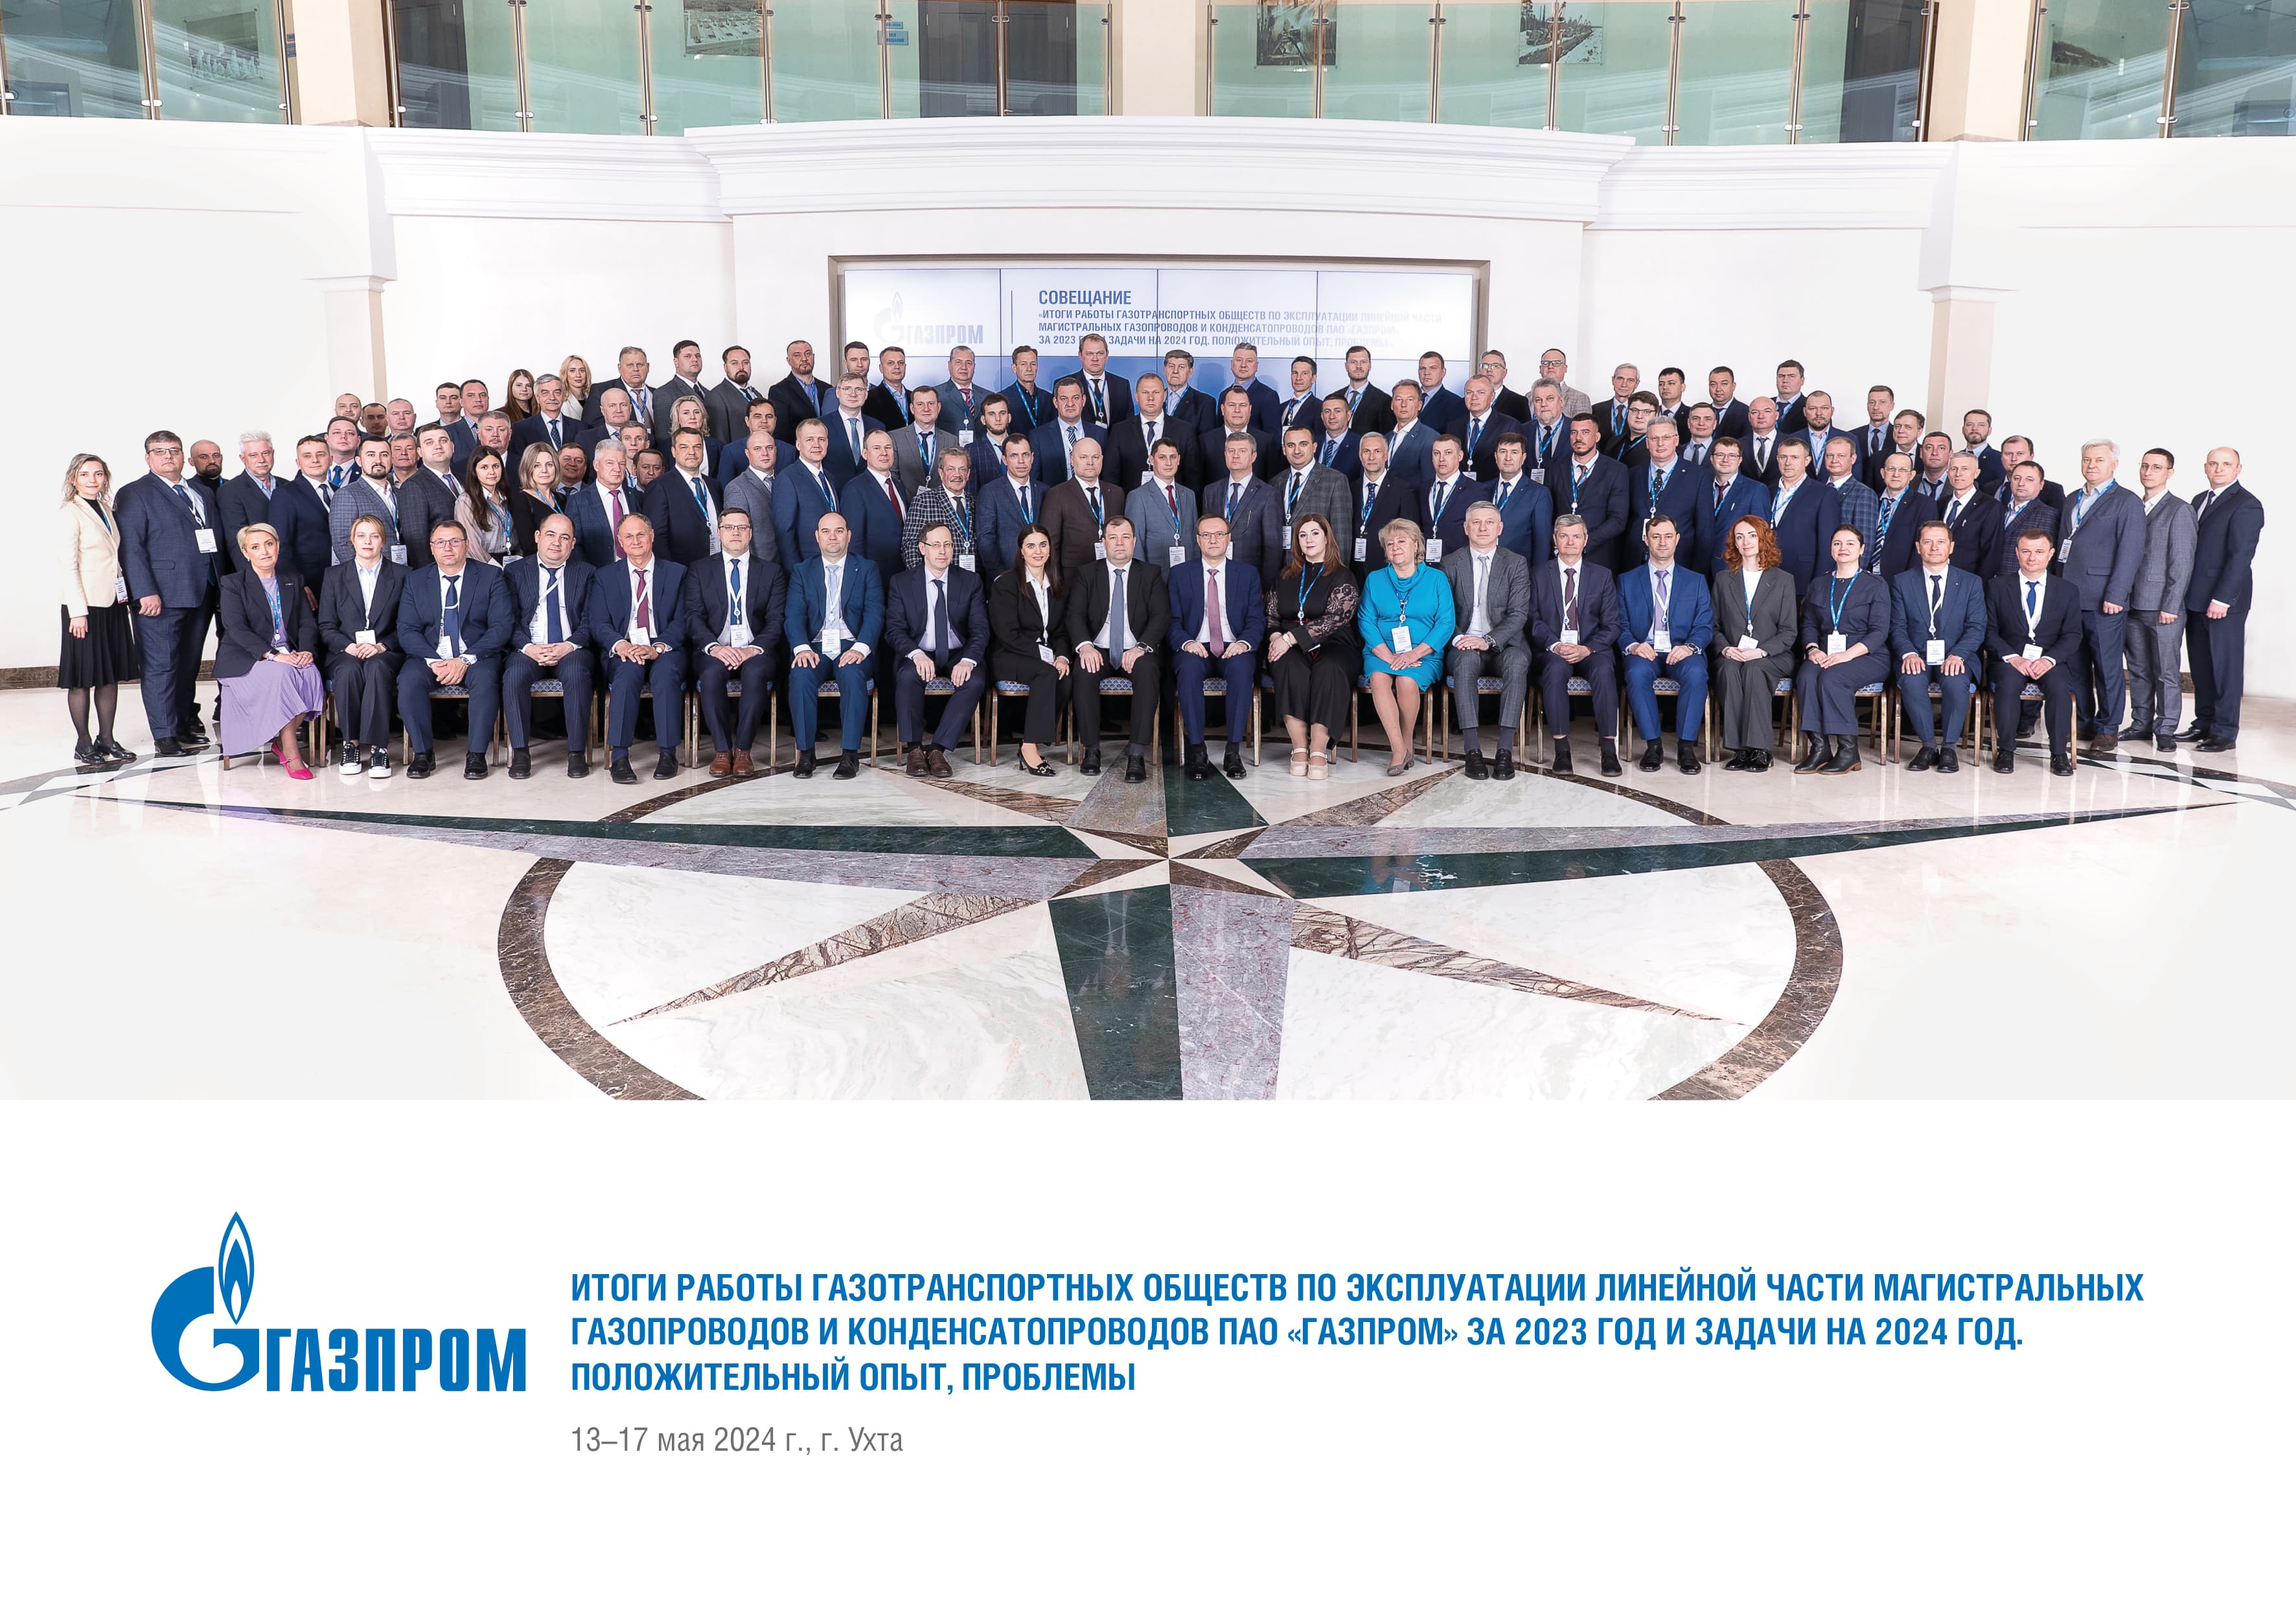 Итоги работы газотранспортных обществ по эксплуатации линейной части магистральных газопроводов и конденсатопроводов ПАО «Газпром» за 2023 год и задачи на 2024 год. Положительный опыт, проблемы».﻿ 